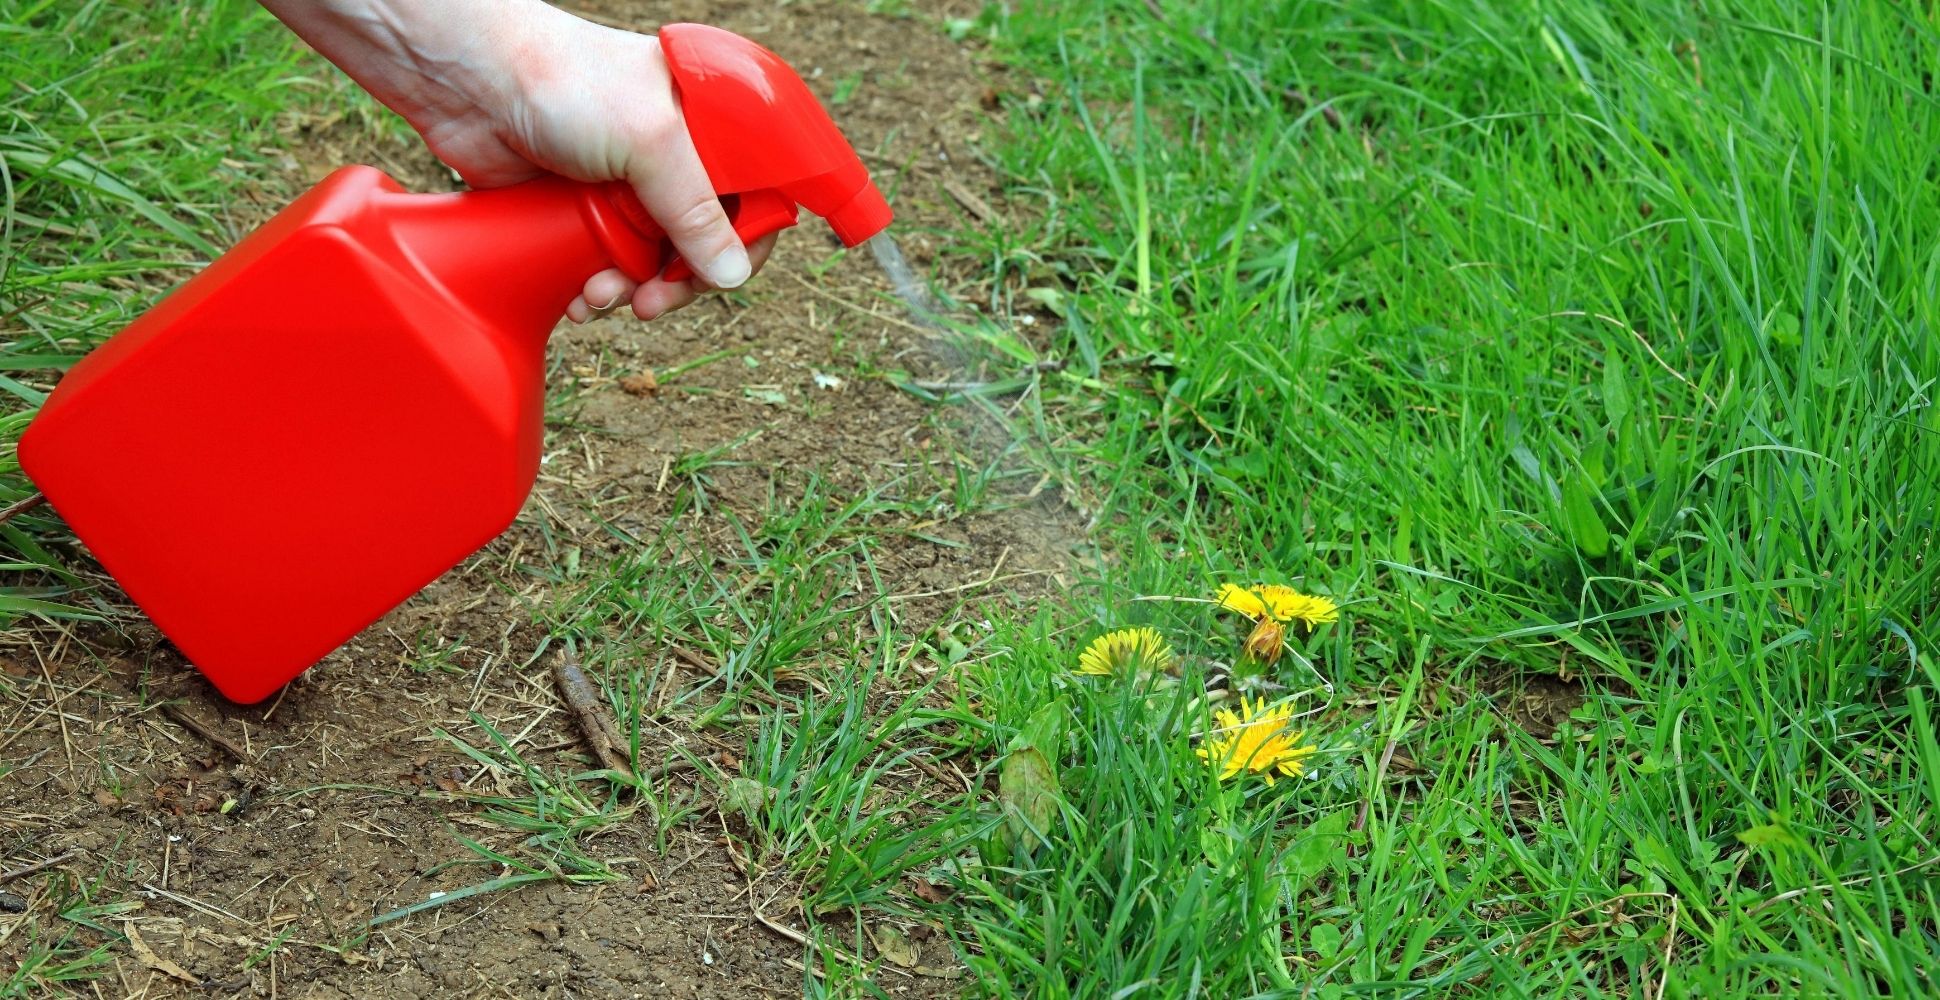 5 Best Dandelion Killer Sprays For Lawns (2021 Review)